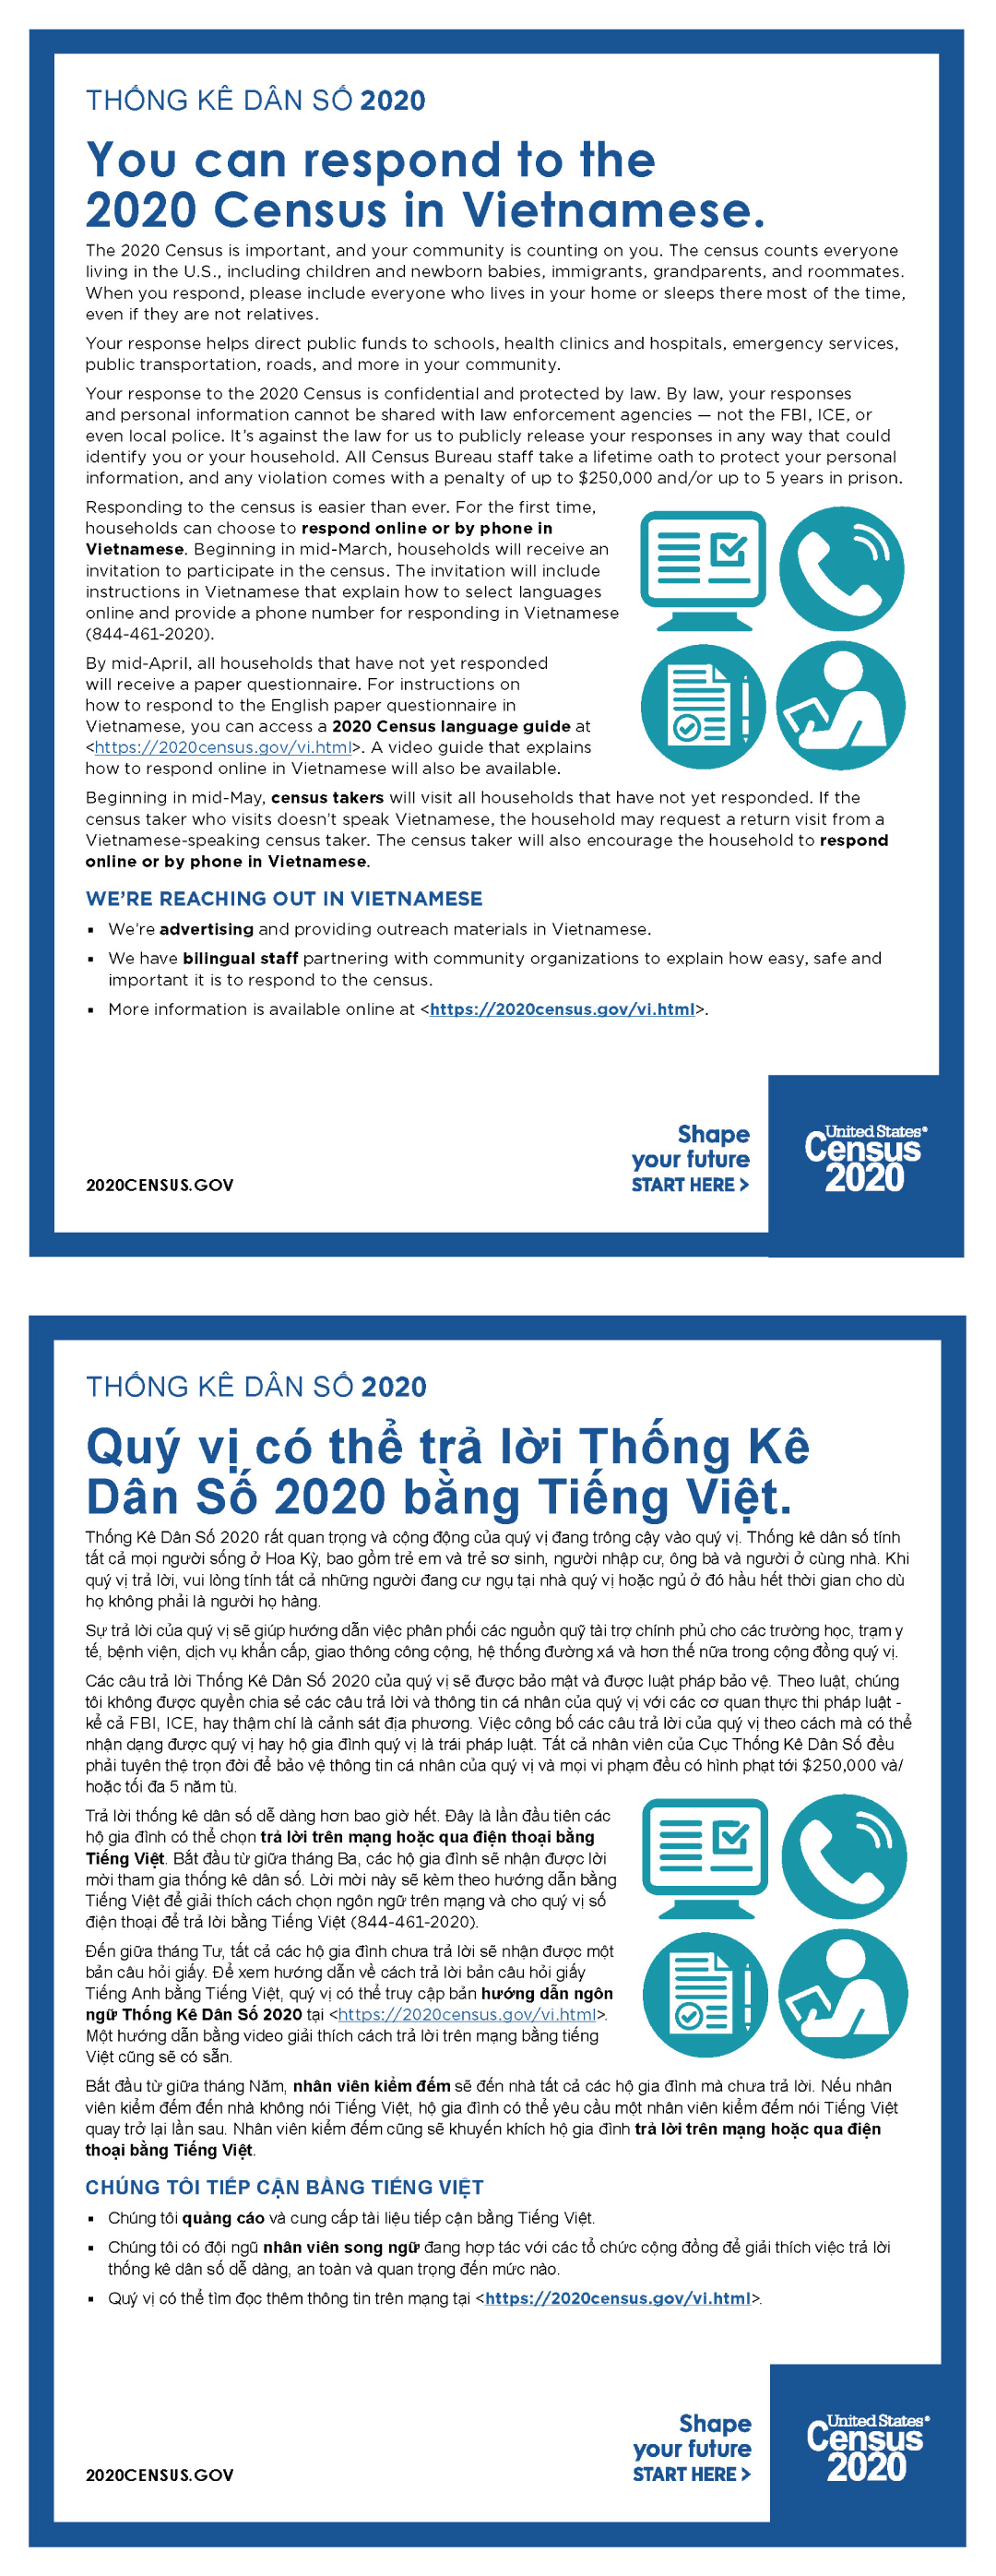 You can respond to the 2020 Census in Vietnamese. (Quý vị có thể trả lời Thống Kê Dân Số 2020 bằng Tiếng Việt.)